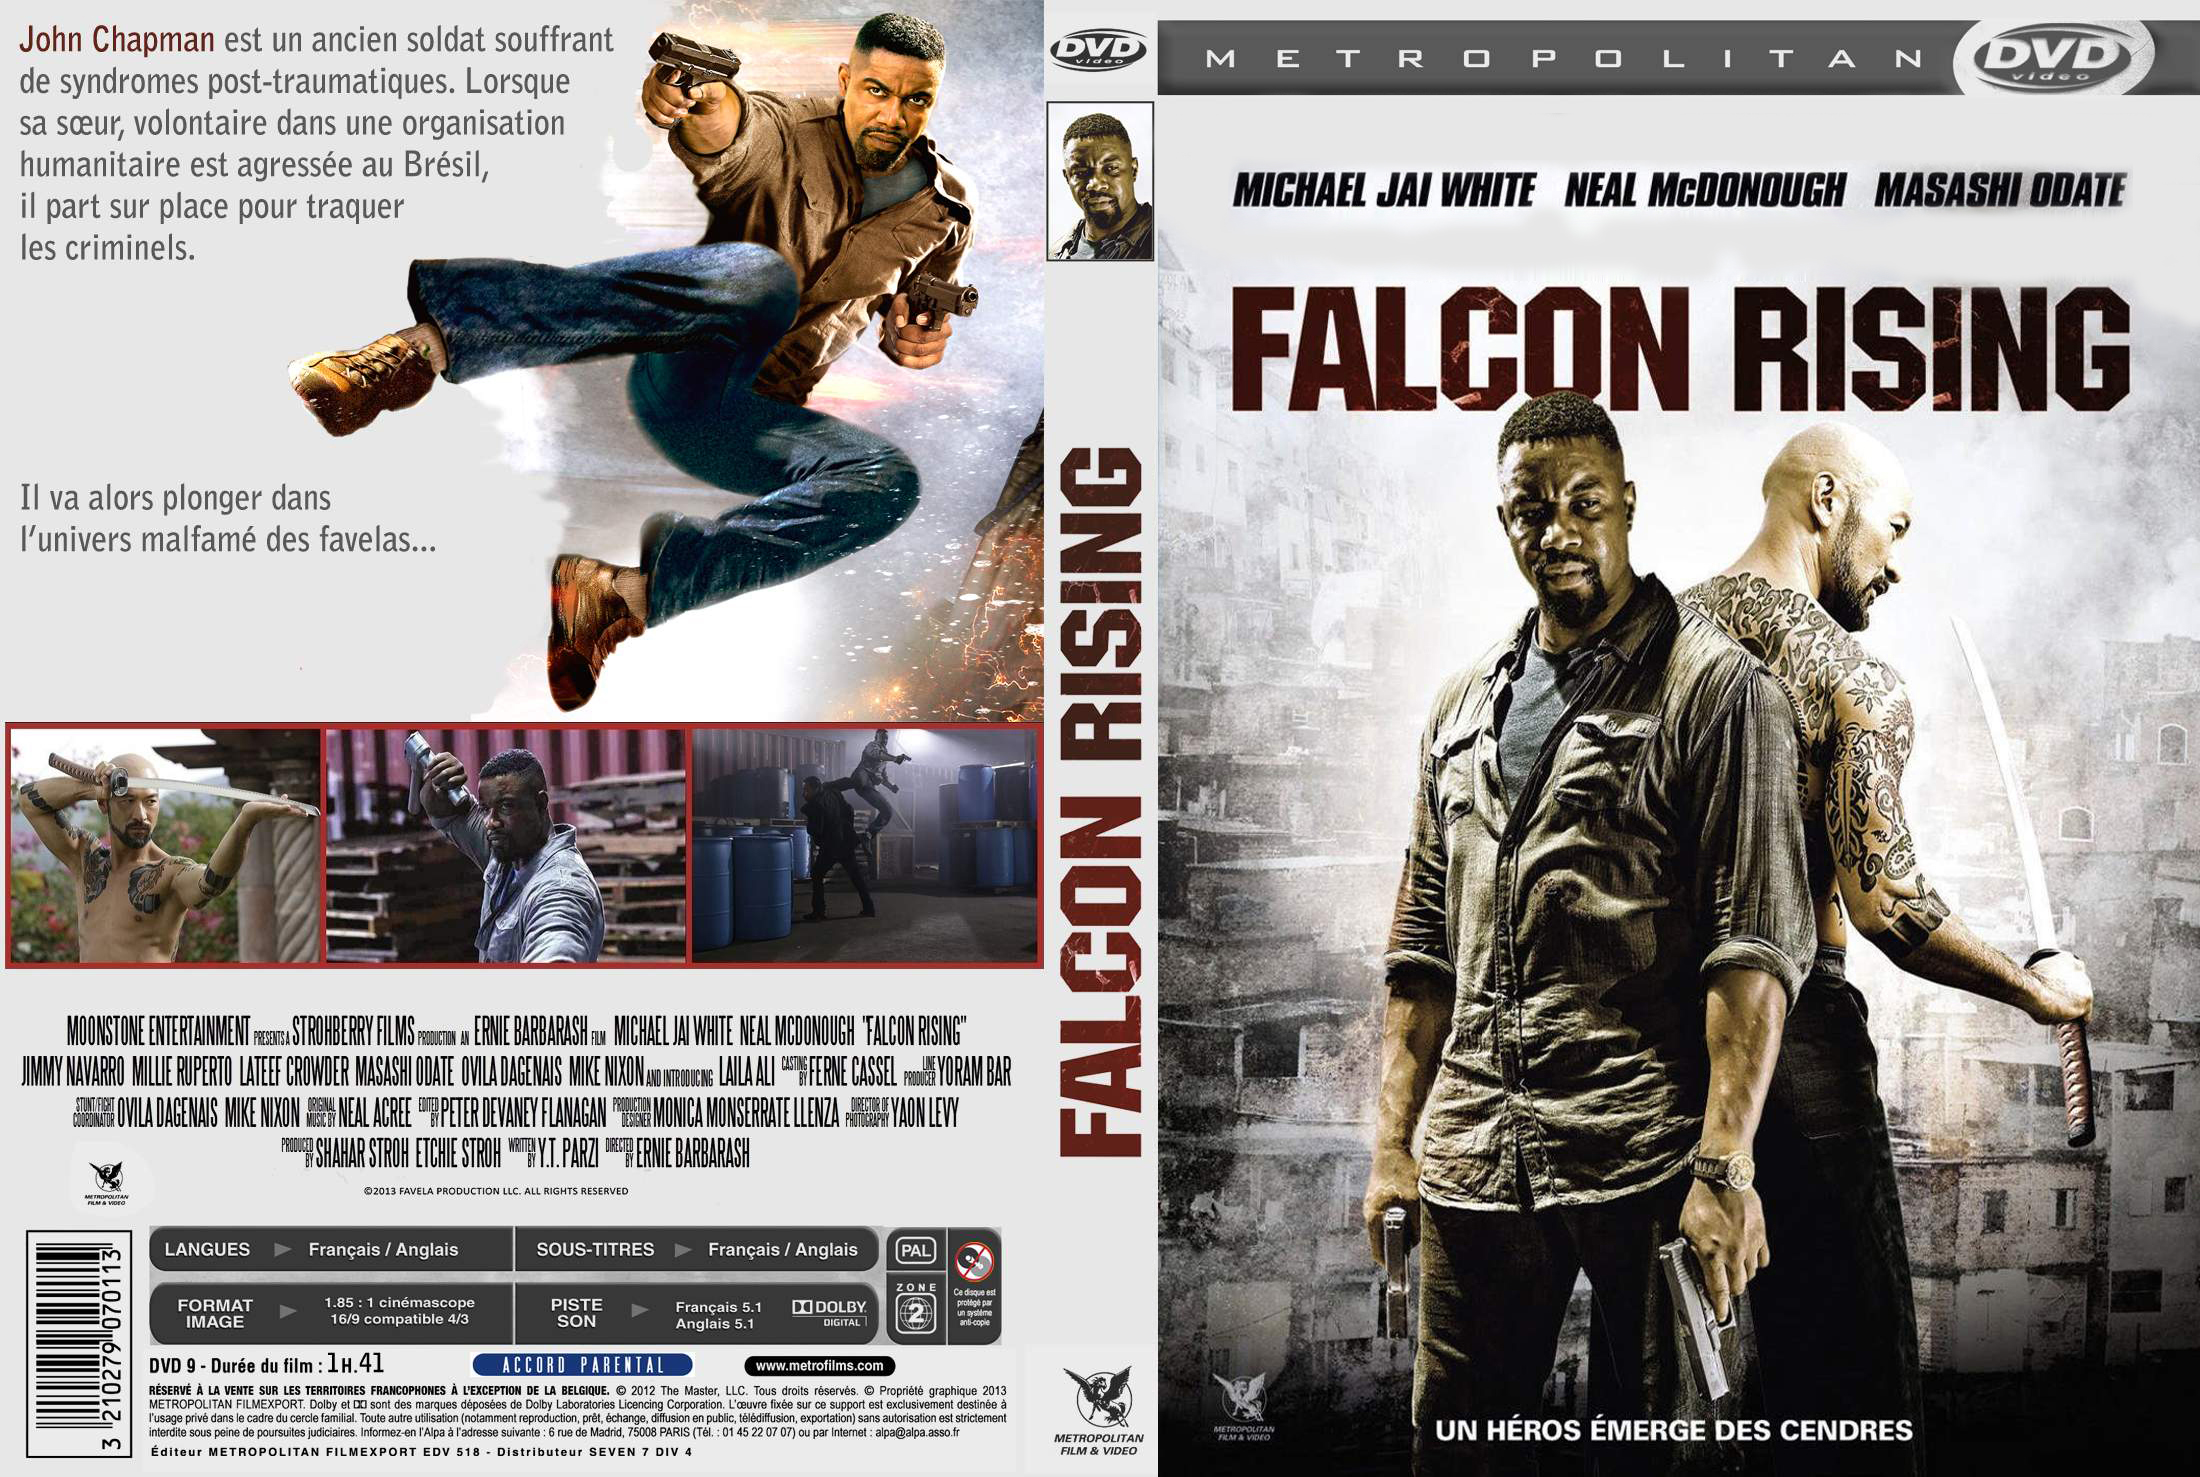 Jaquette DVD Falcon rising